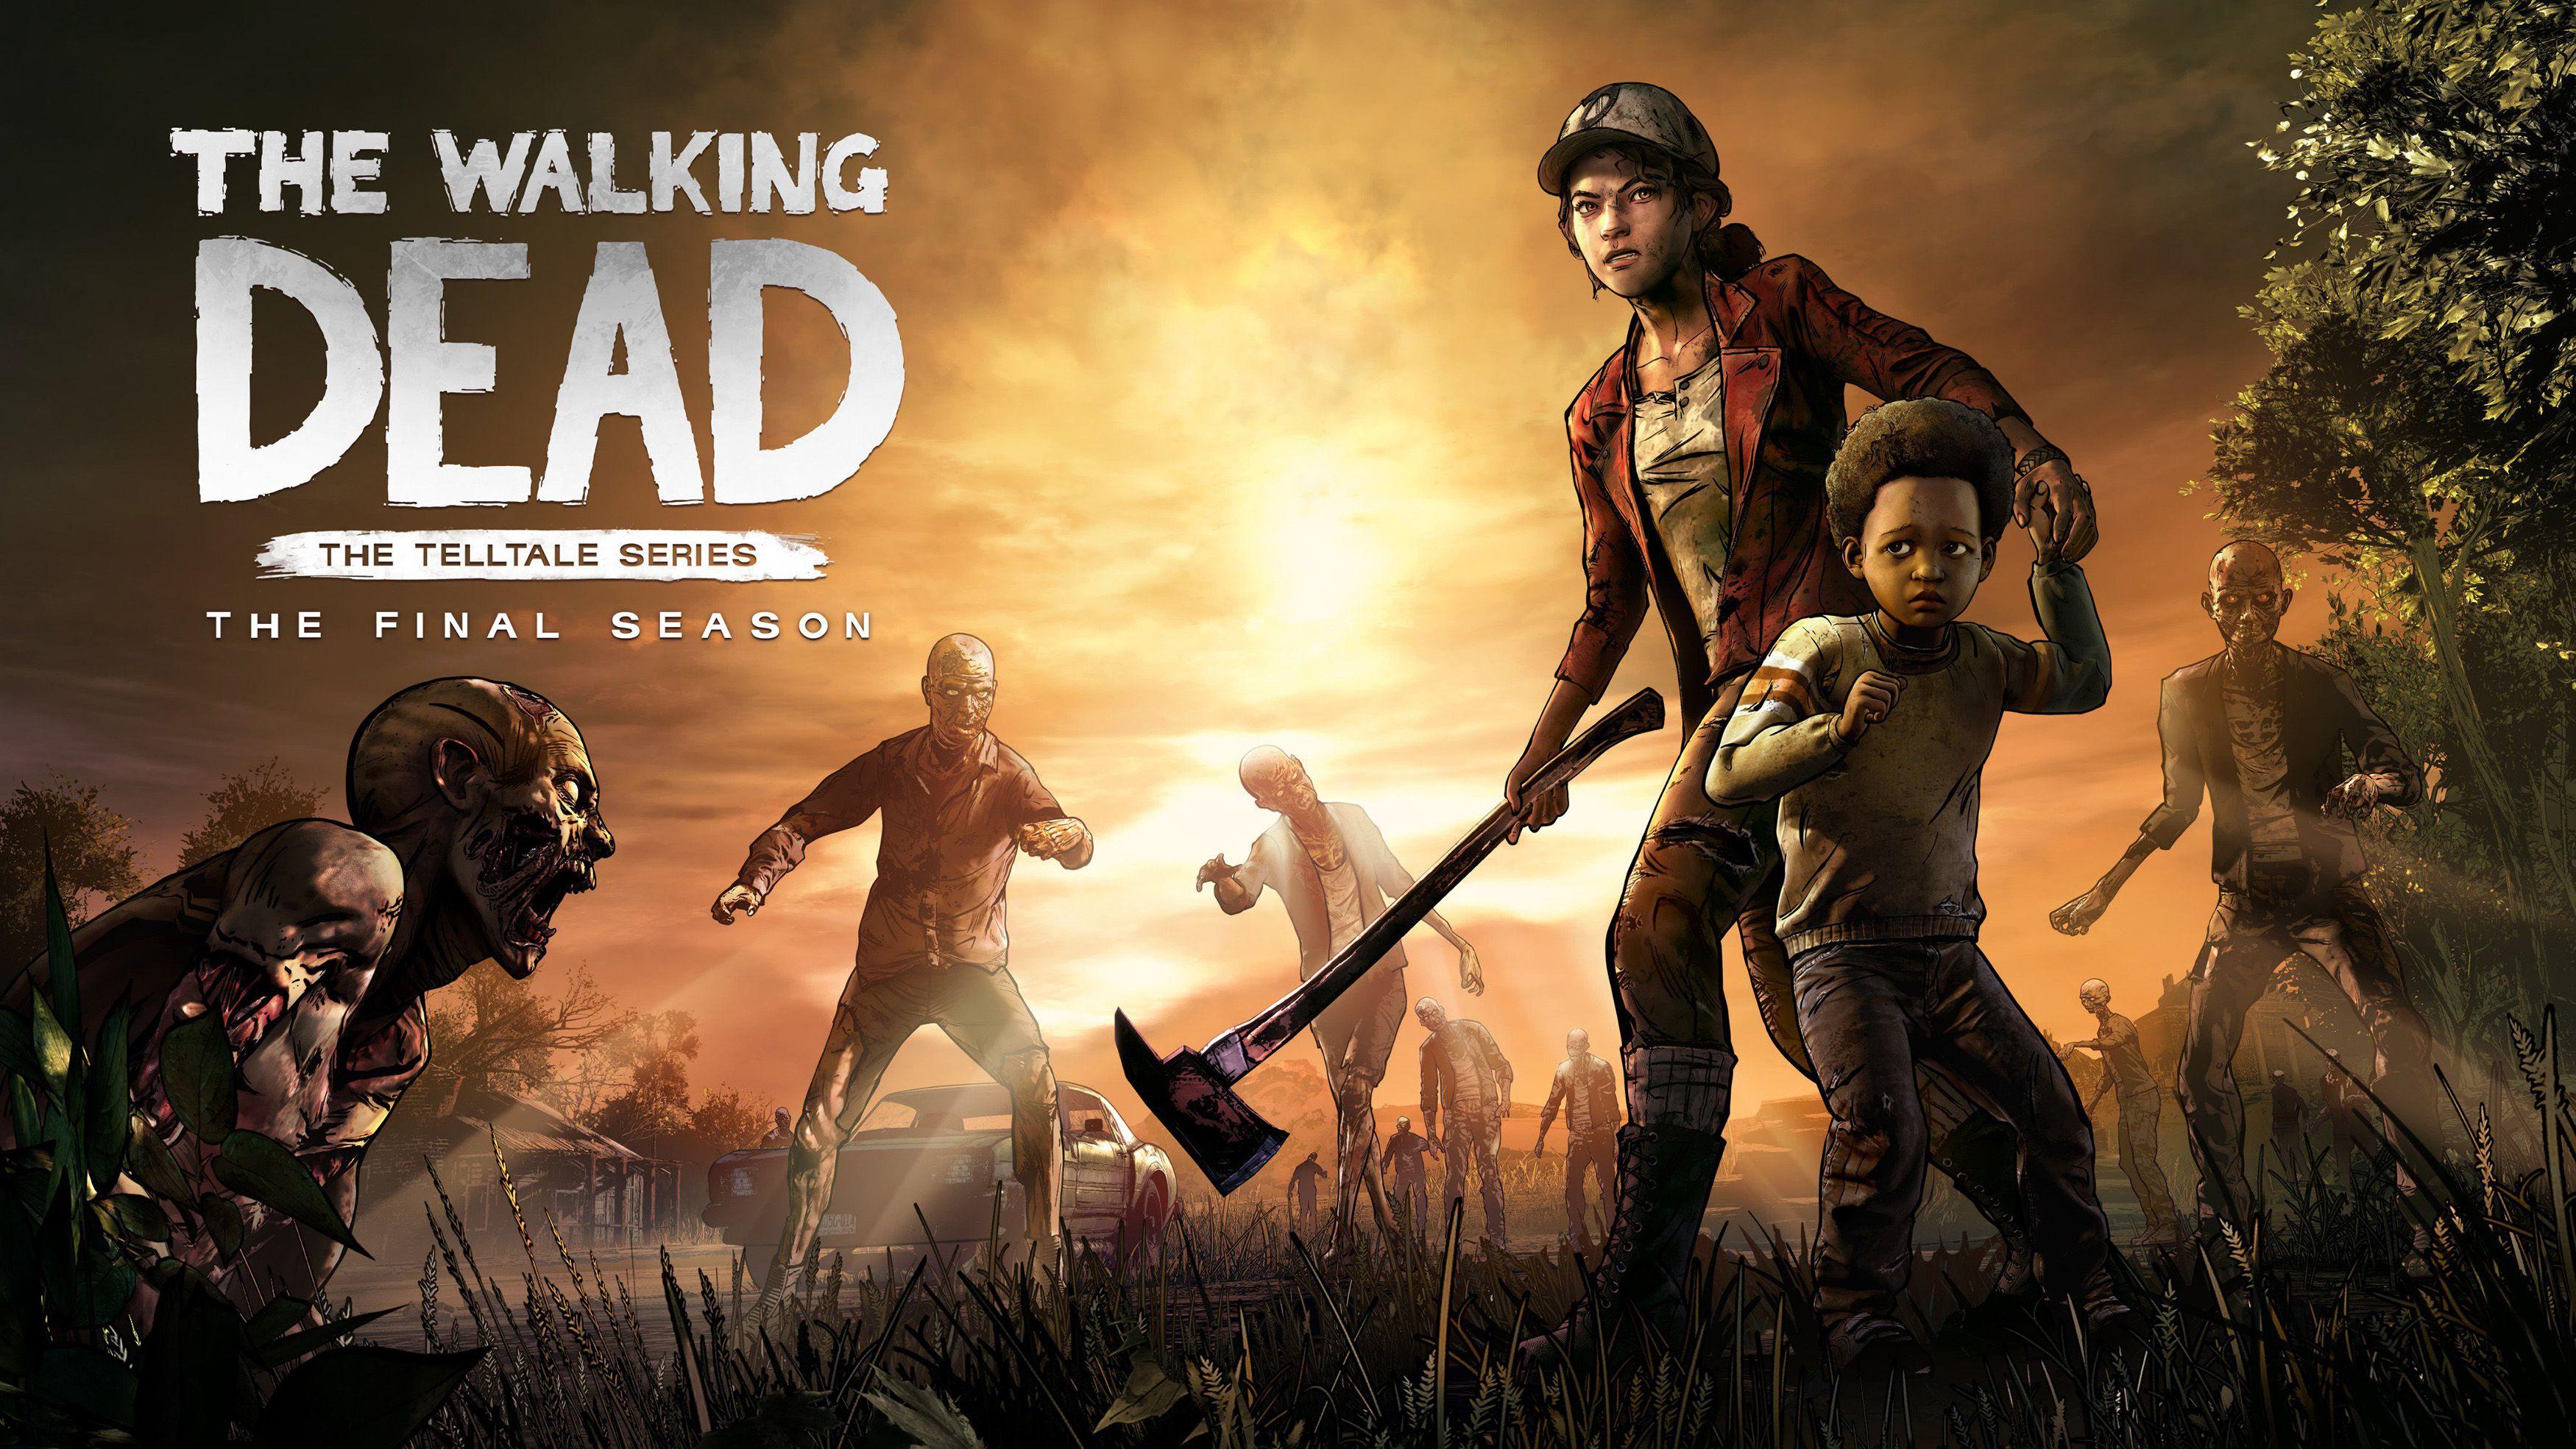 The Walking Dead: The Final Season HD Wallpaper. Background